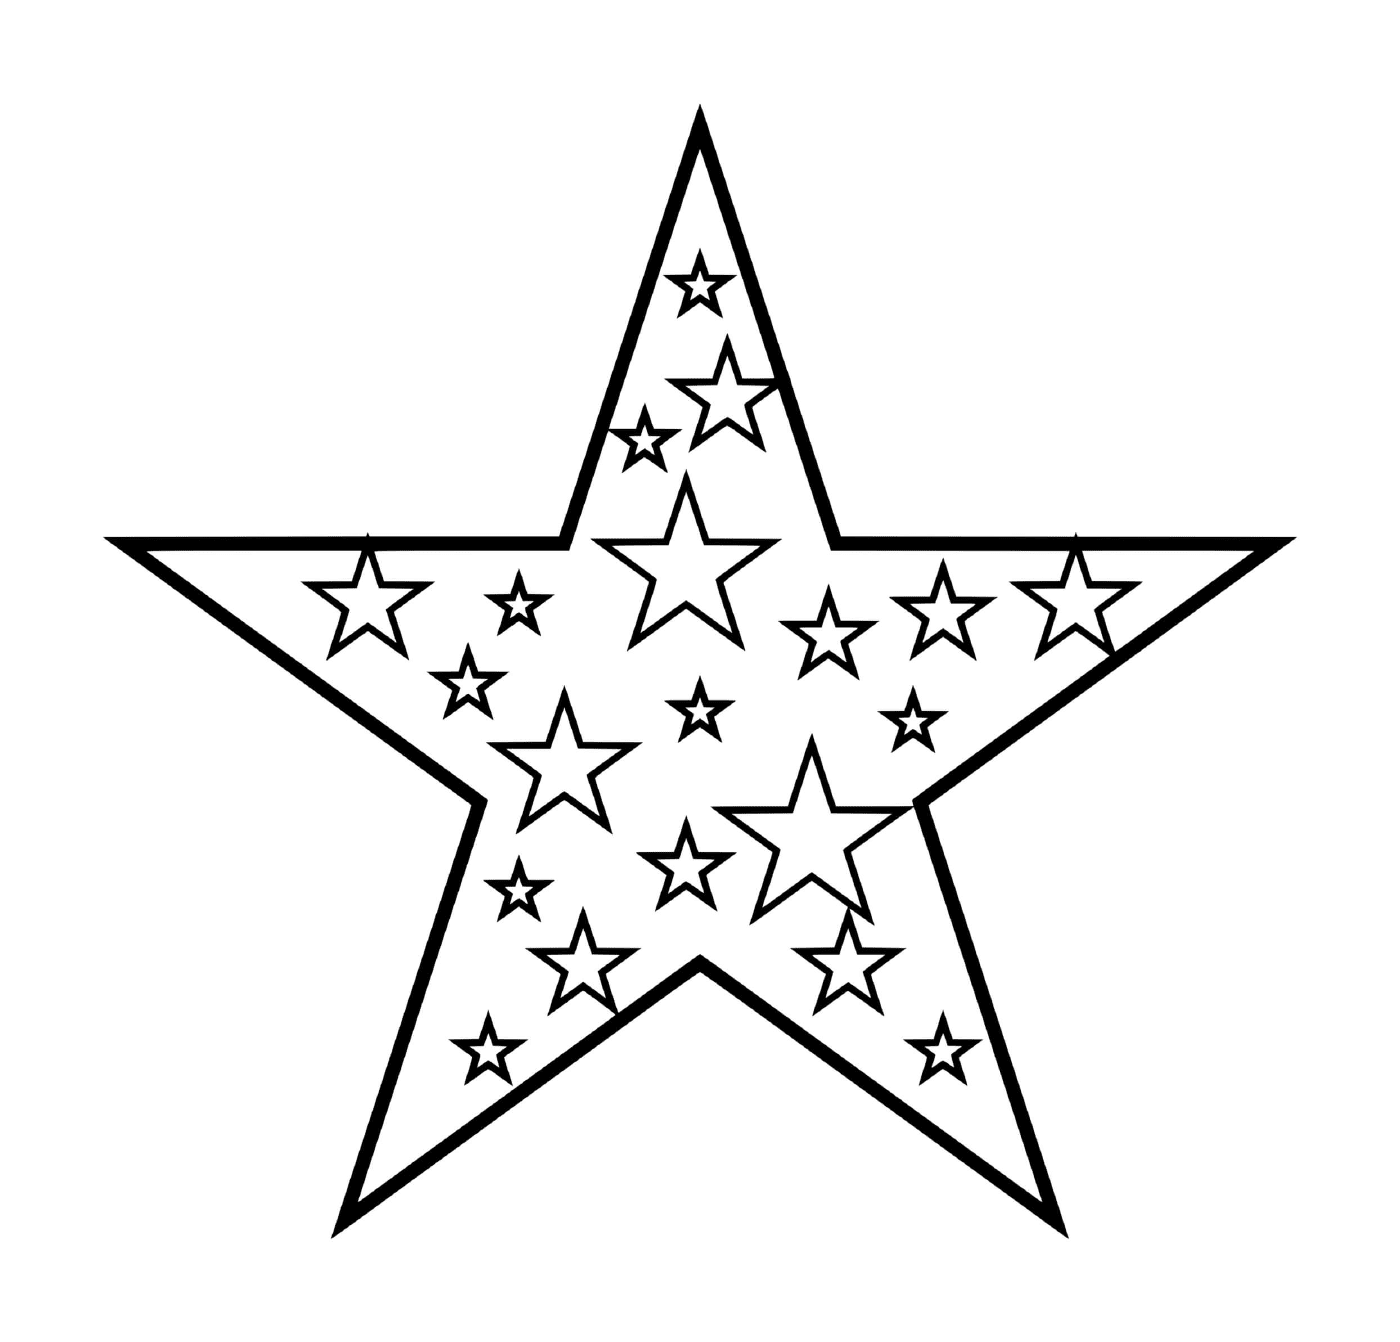   Une étoile entourée d'autres étoiles scintillantes 